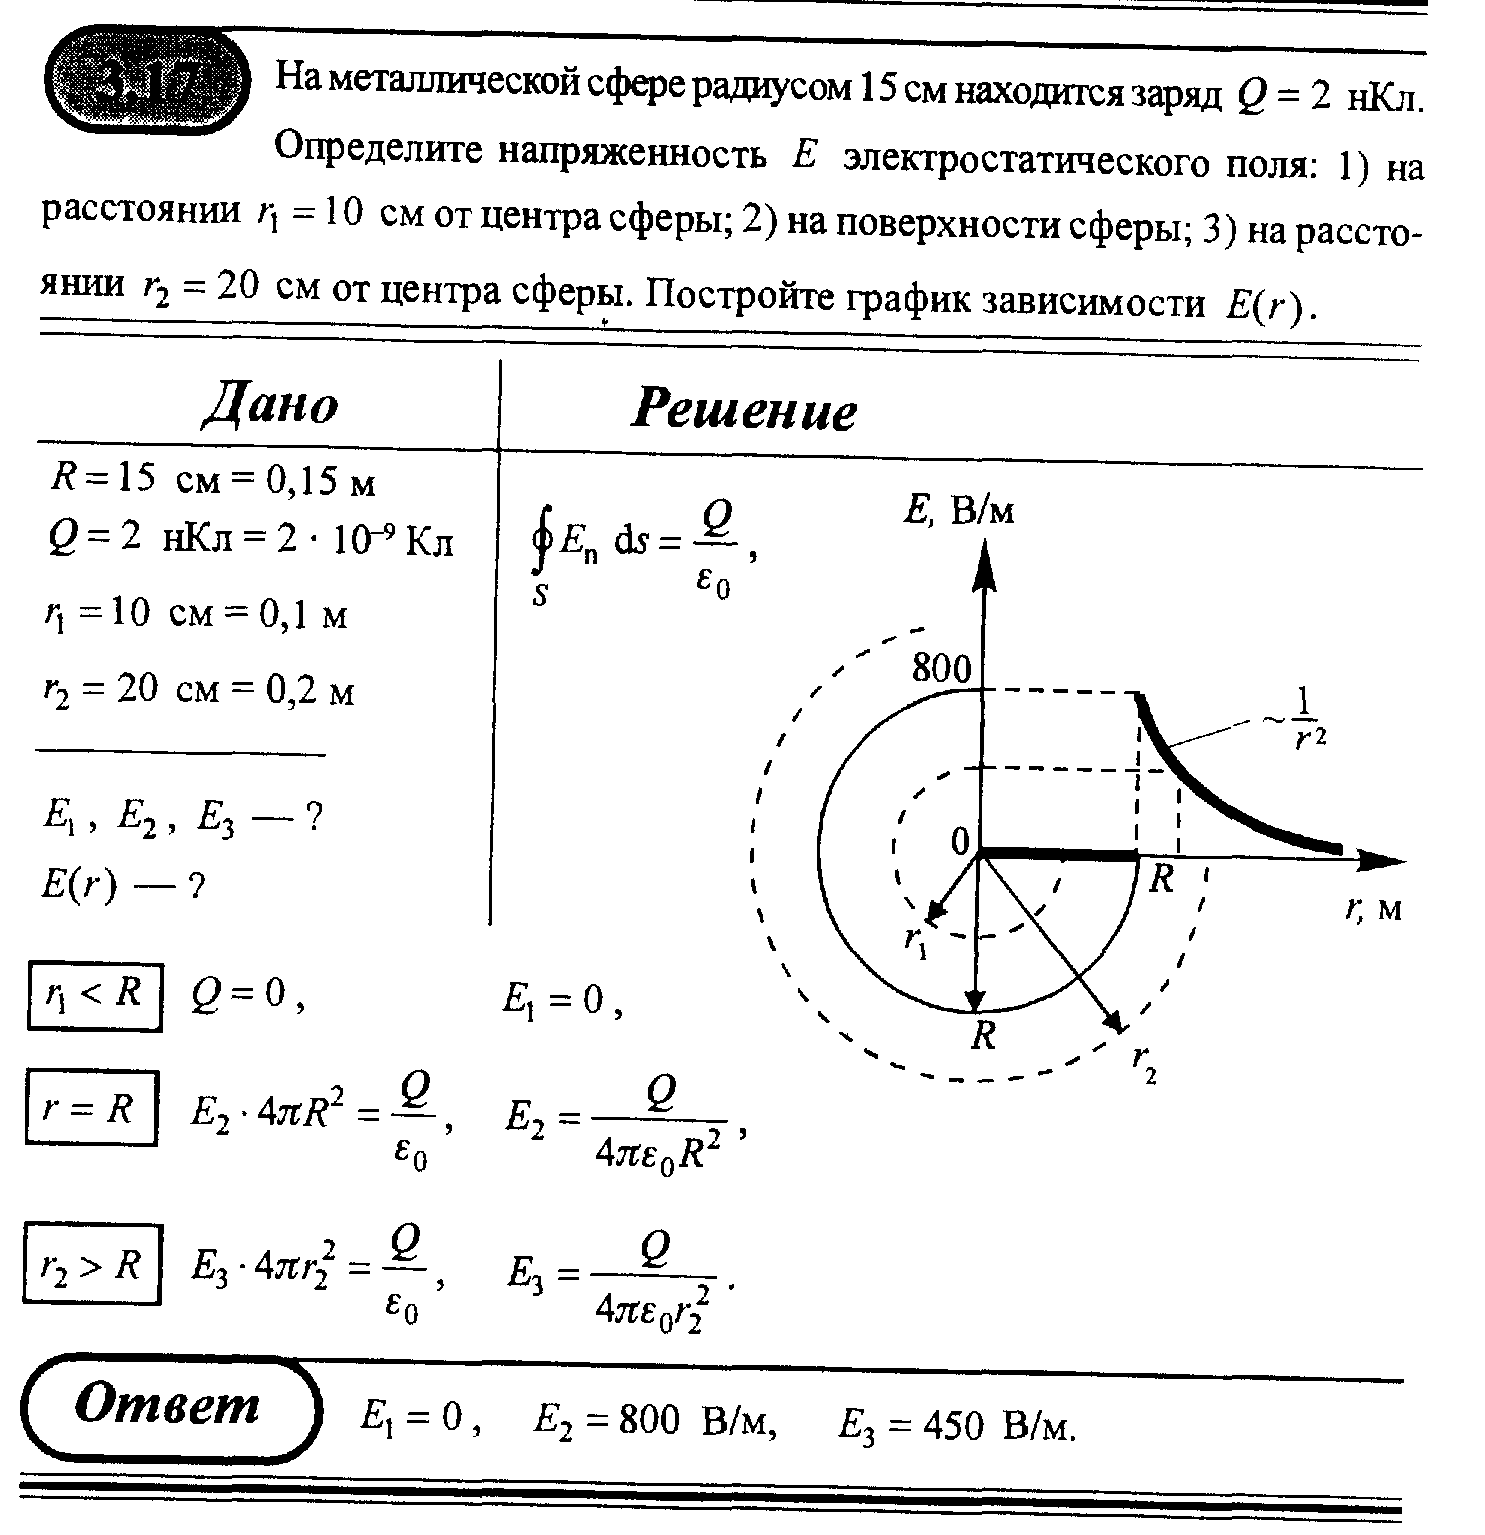 Две металлические концентрические сферы с радиусами 15 и 30